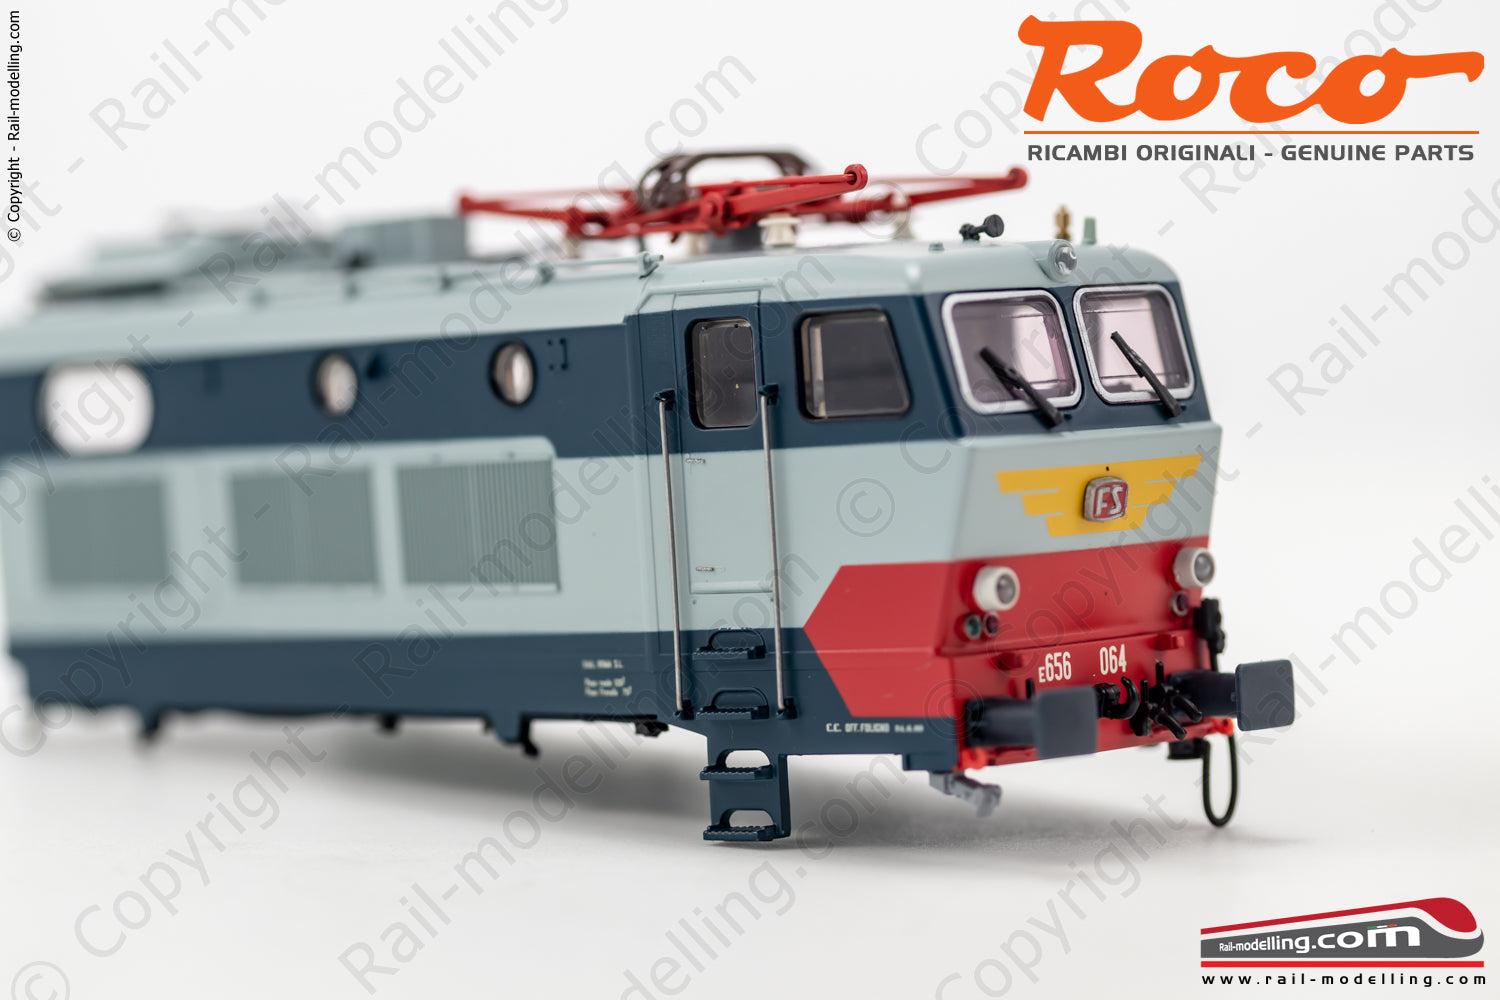 ROCO 123084 - H0 1:87 - Cassa lato B per locomotiva FS E 656.064